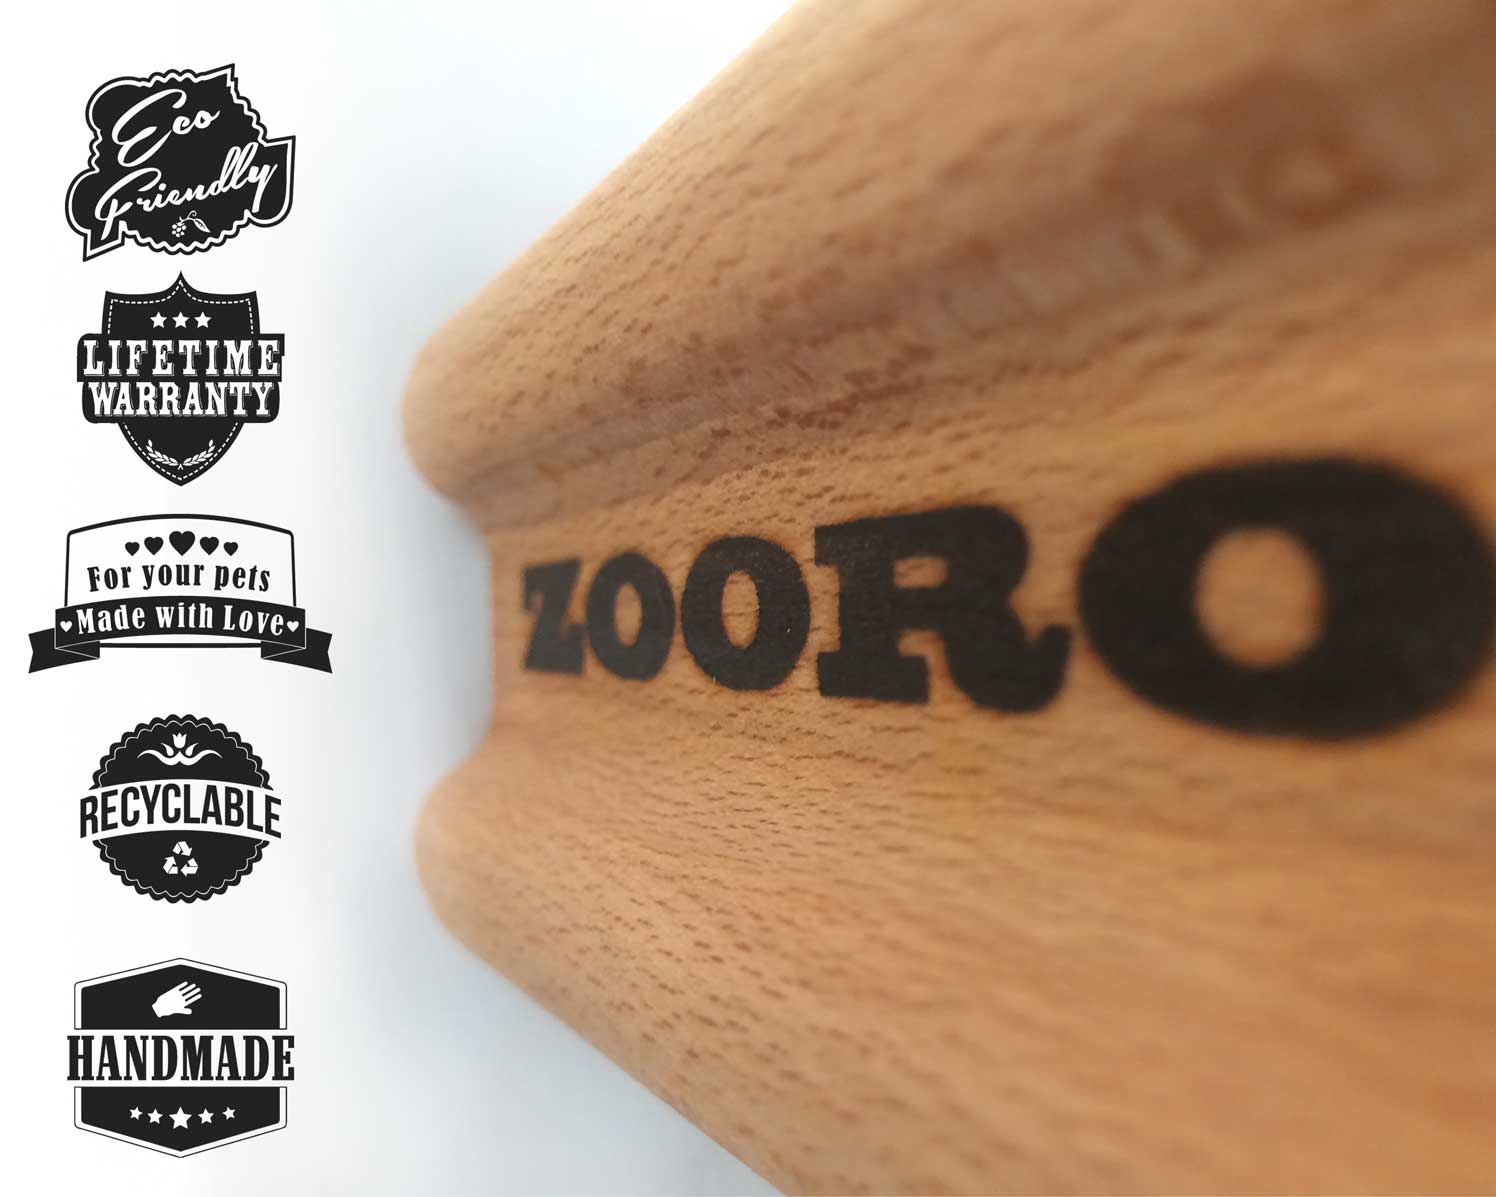 Zooro -Fällskrapa- handgjord, ekovänlig